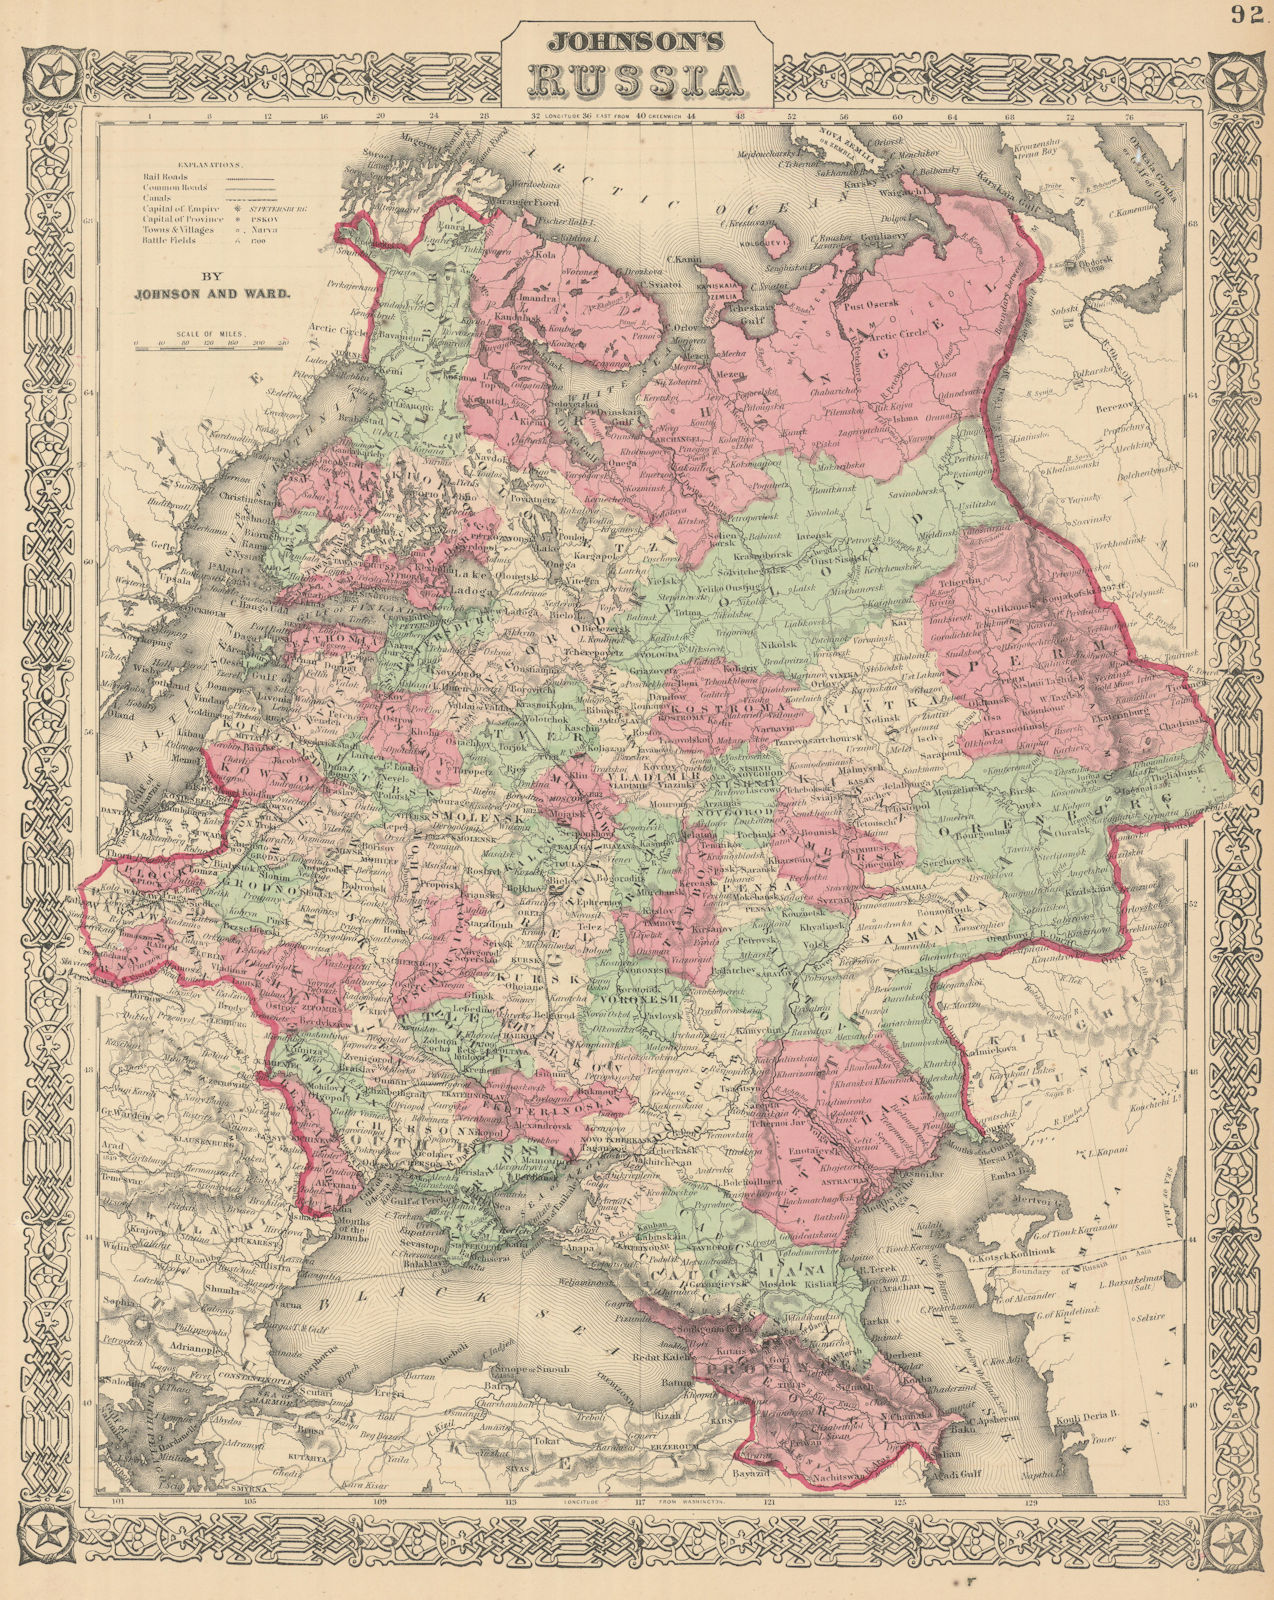 Johnson's Russia in Europe. Ukraine Poland Baltics Finland Caucasus 1866 map